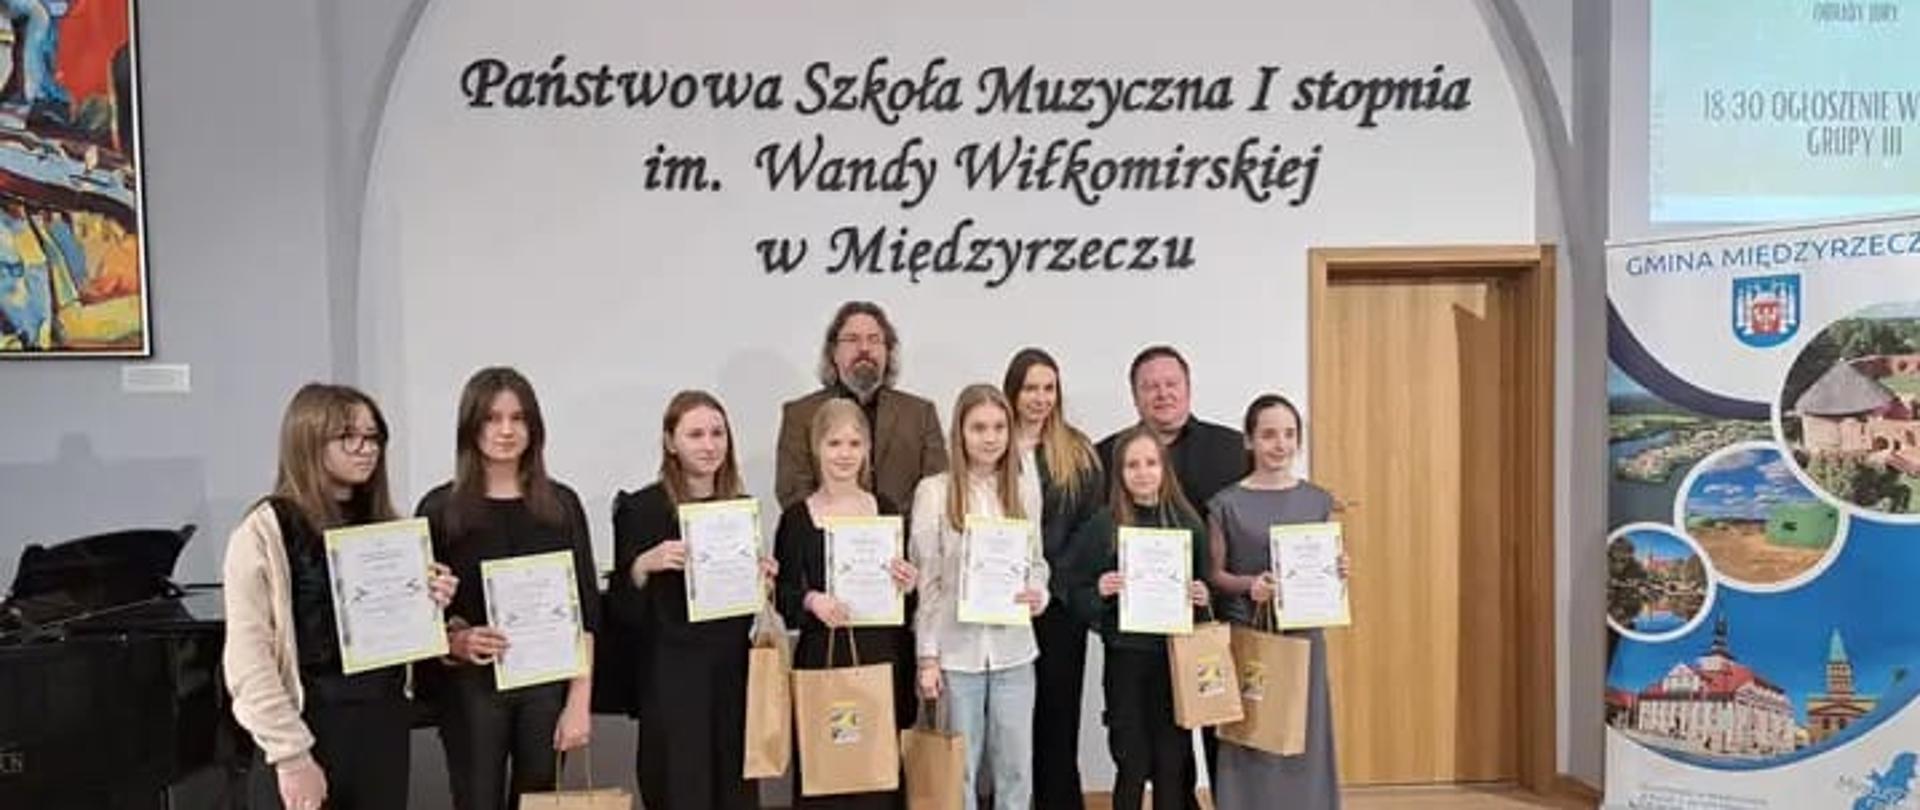 Laureaci konkursu smyczkowego oraz jurorzy stoją z dyplomami na scenie szkoły muzycznej w Międzyrzeczu